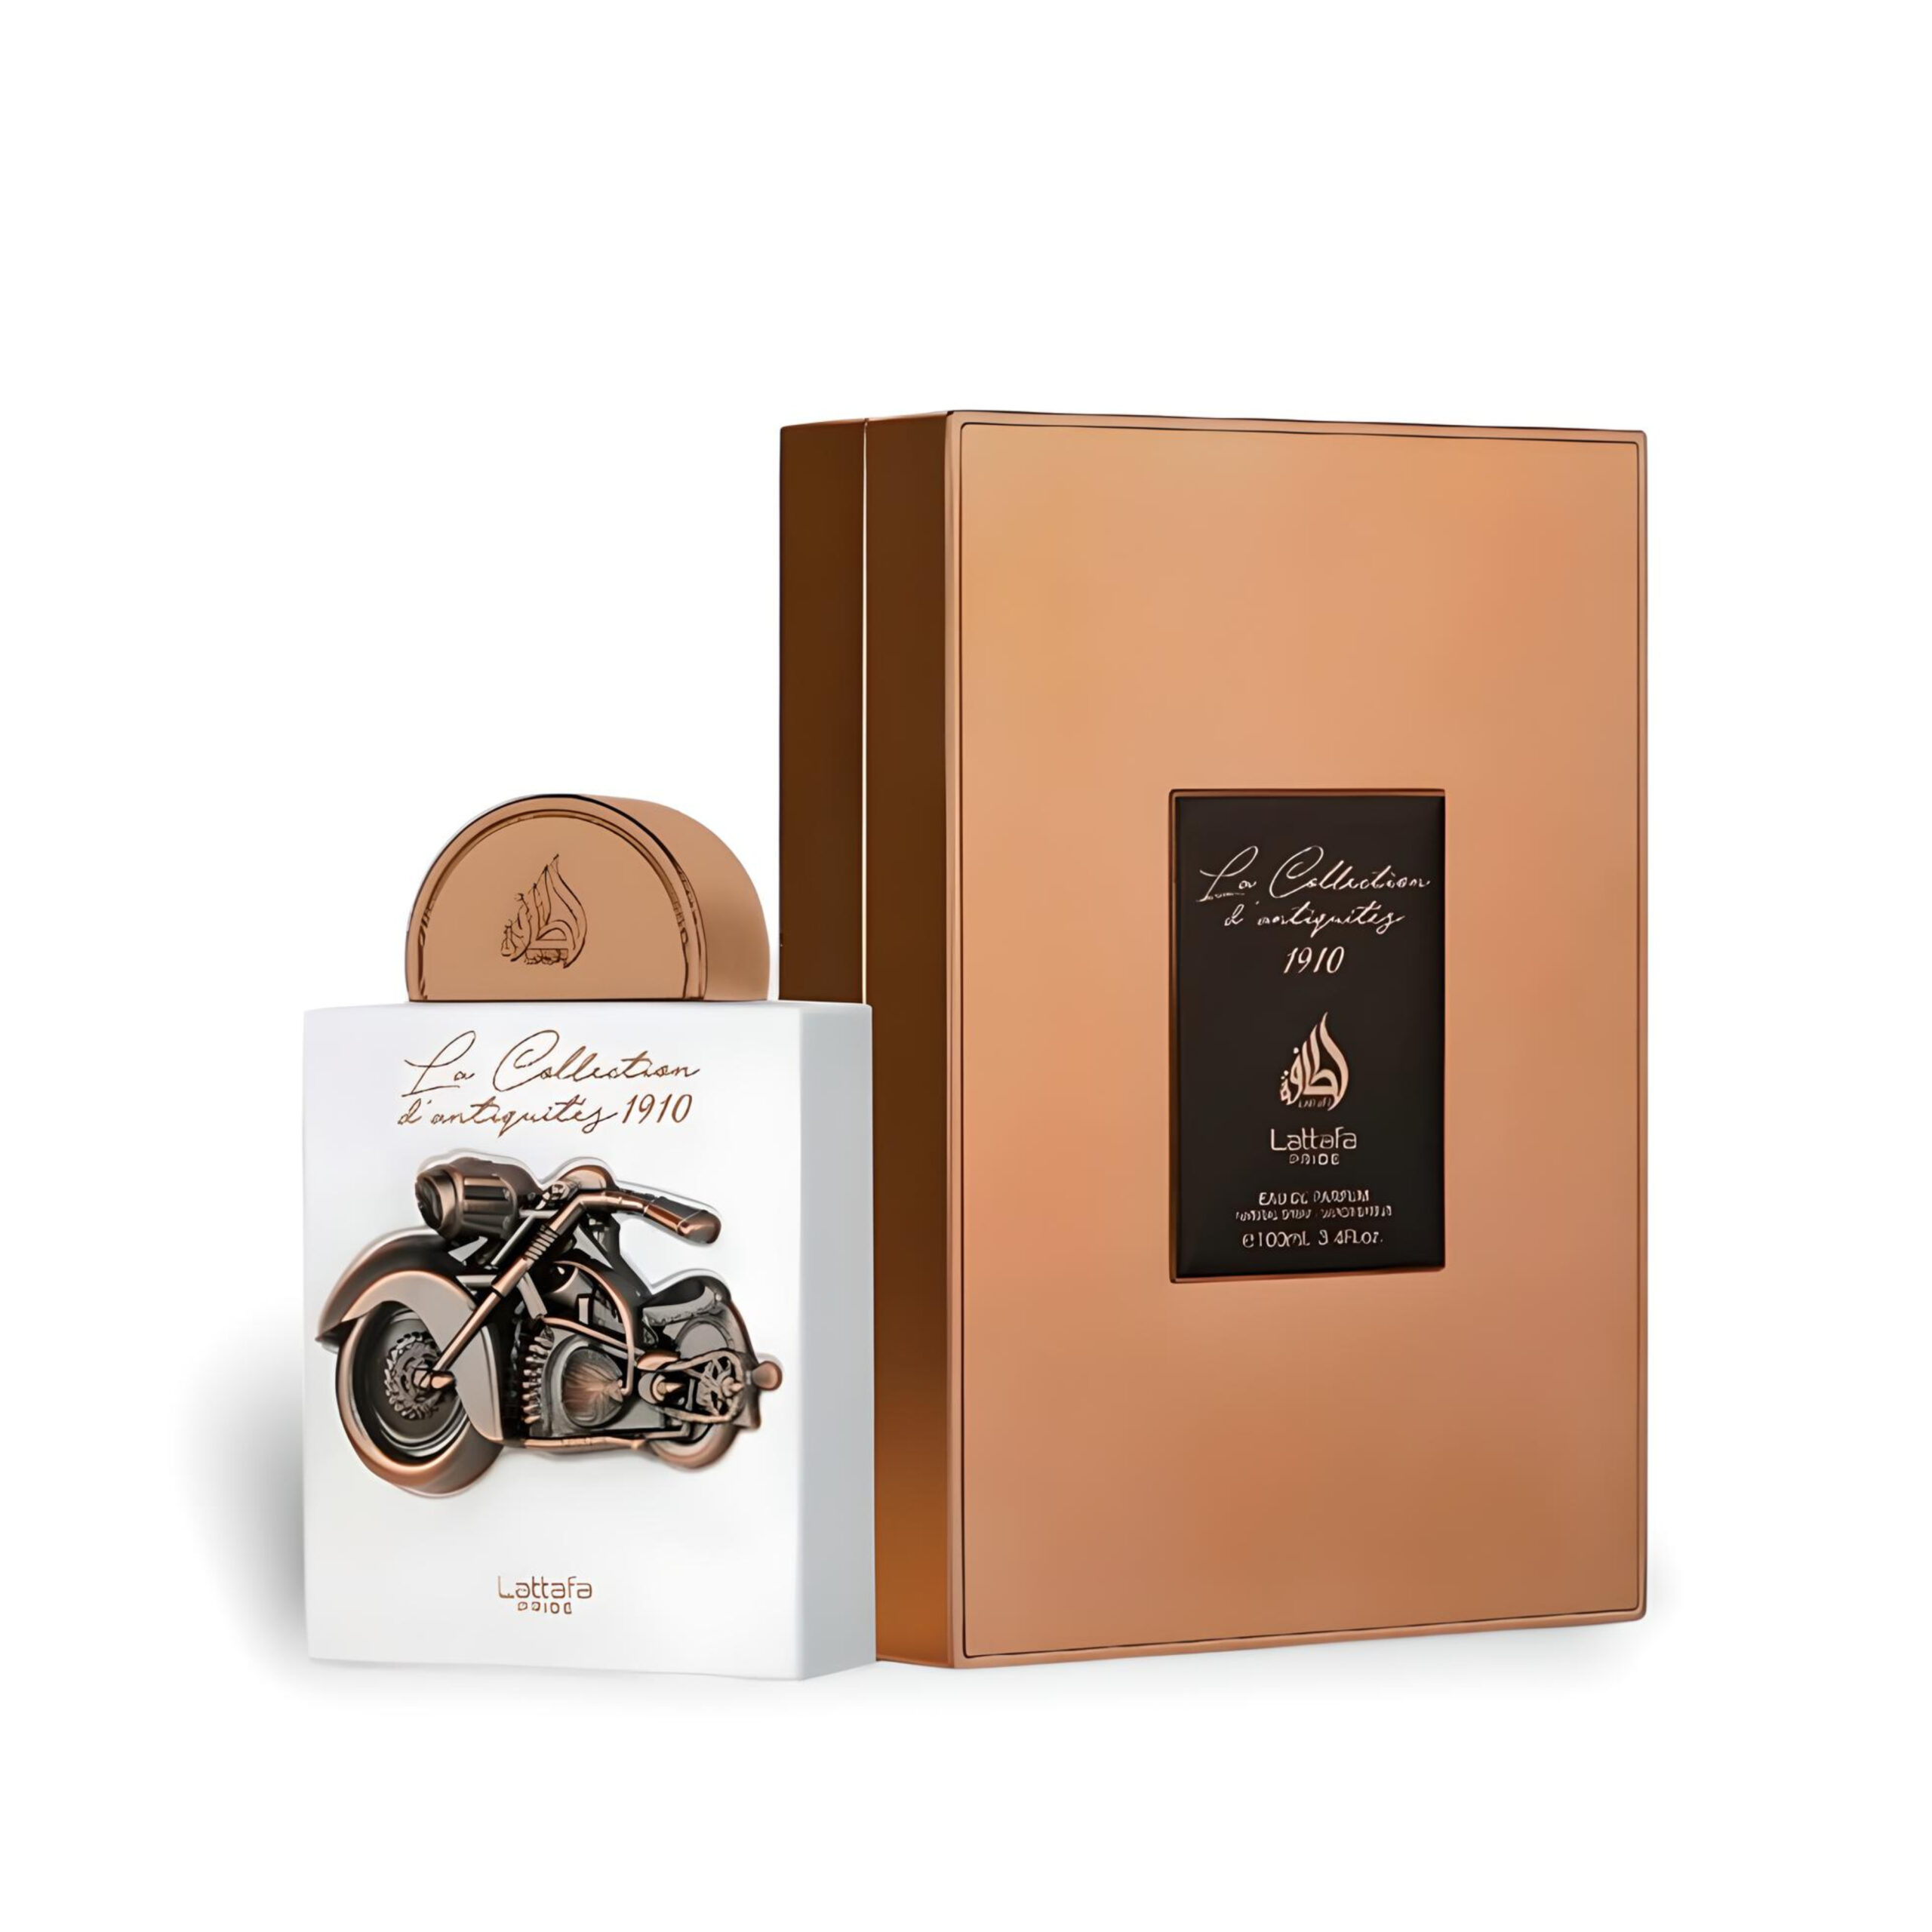 La Collection D'Antiquites 1910 Perfume / Eau De Parfum 100Ml By Lattafa Pride 